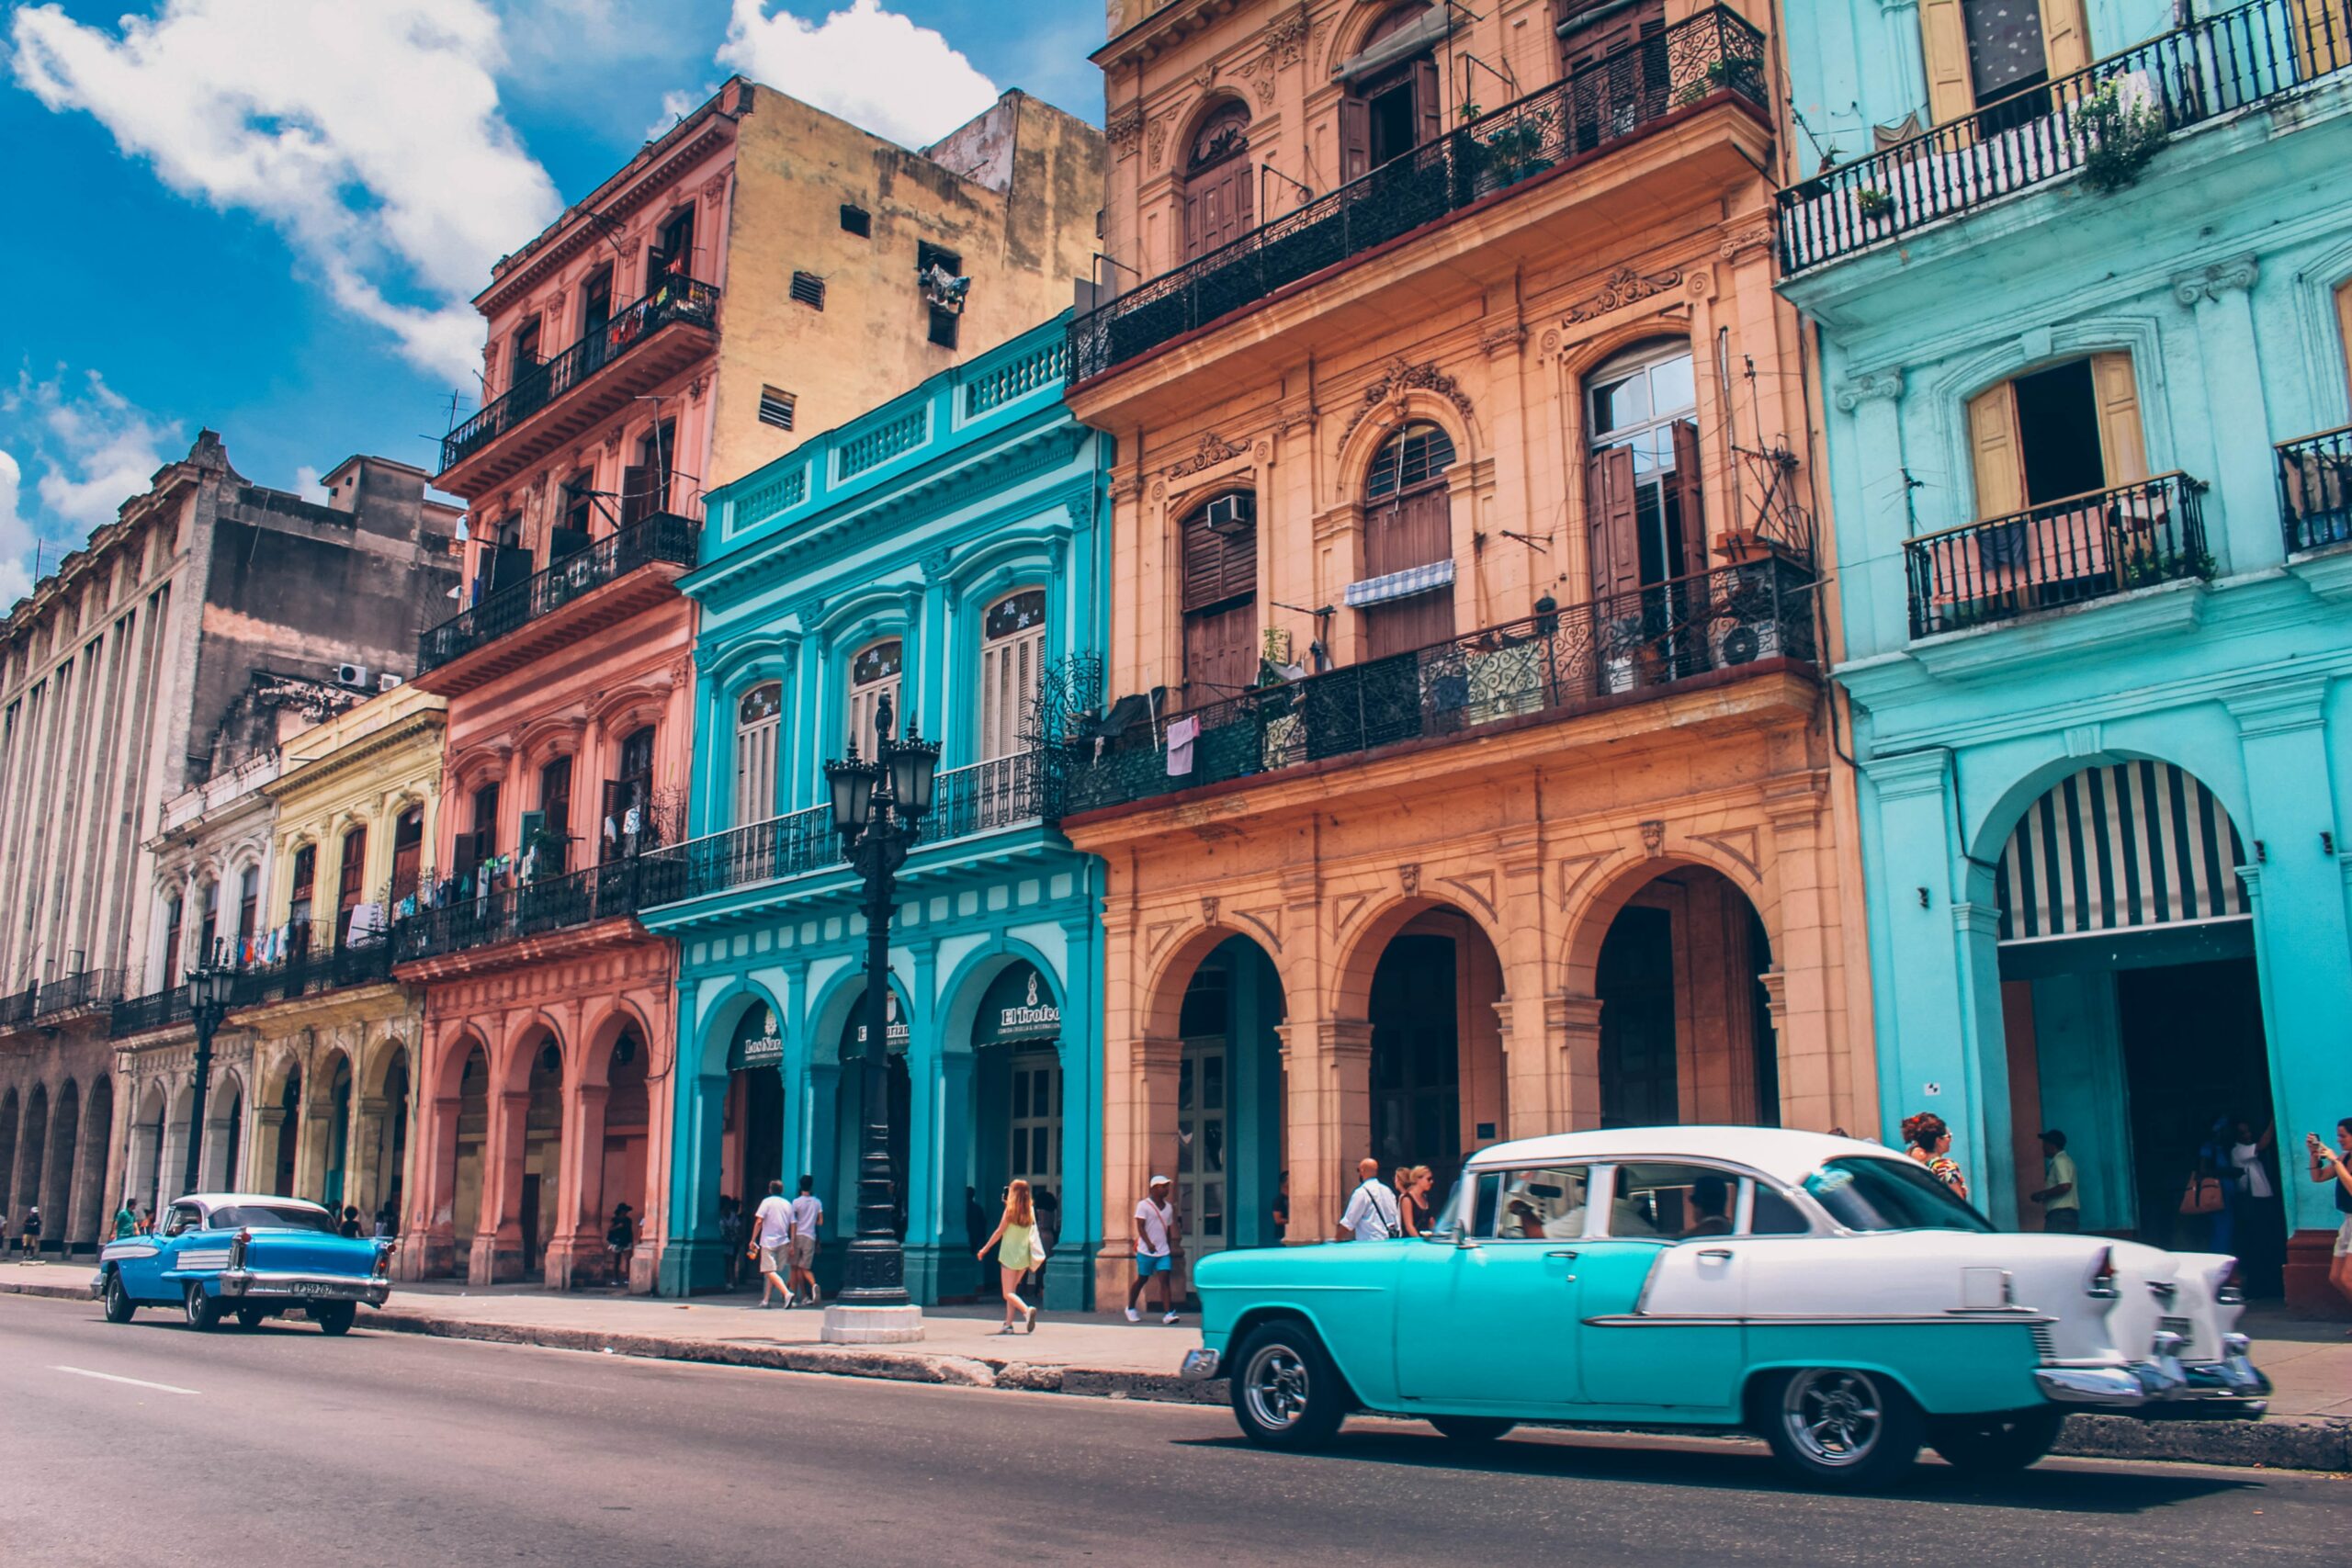 Byznys letenky s 40% slevou: Havana a Dominikána od 33 490 Kč